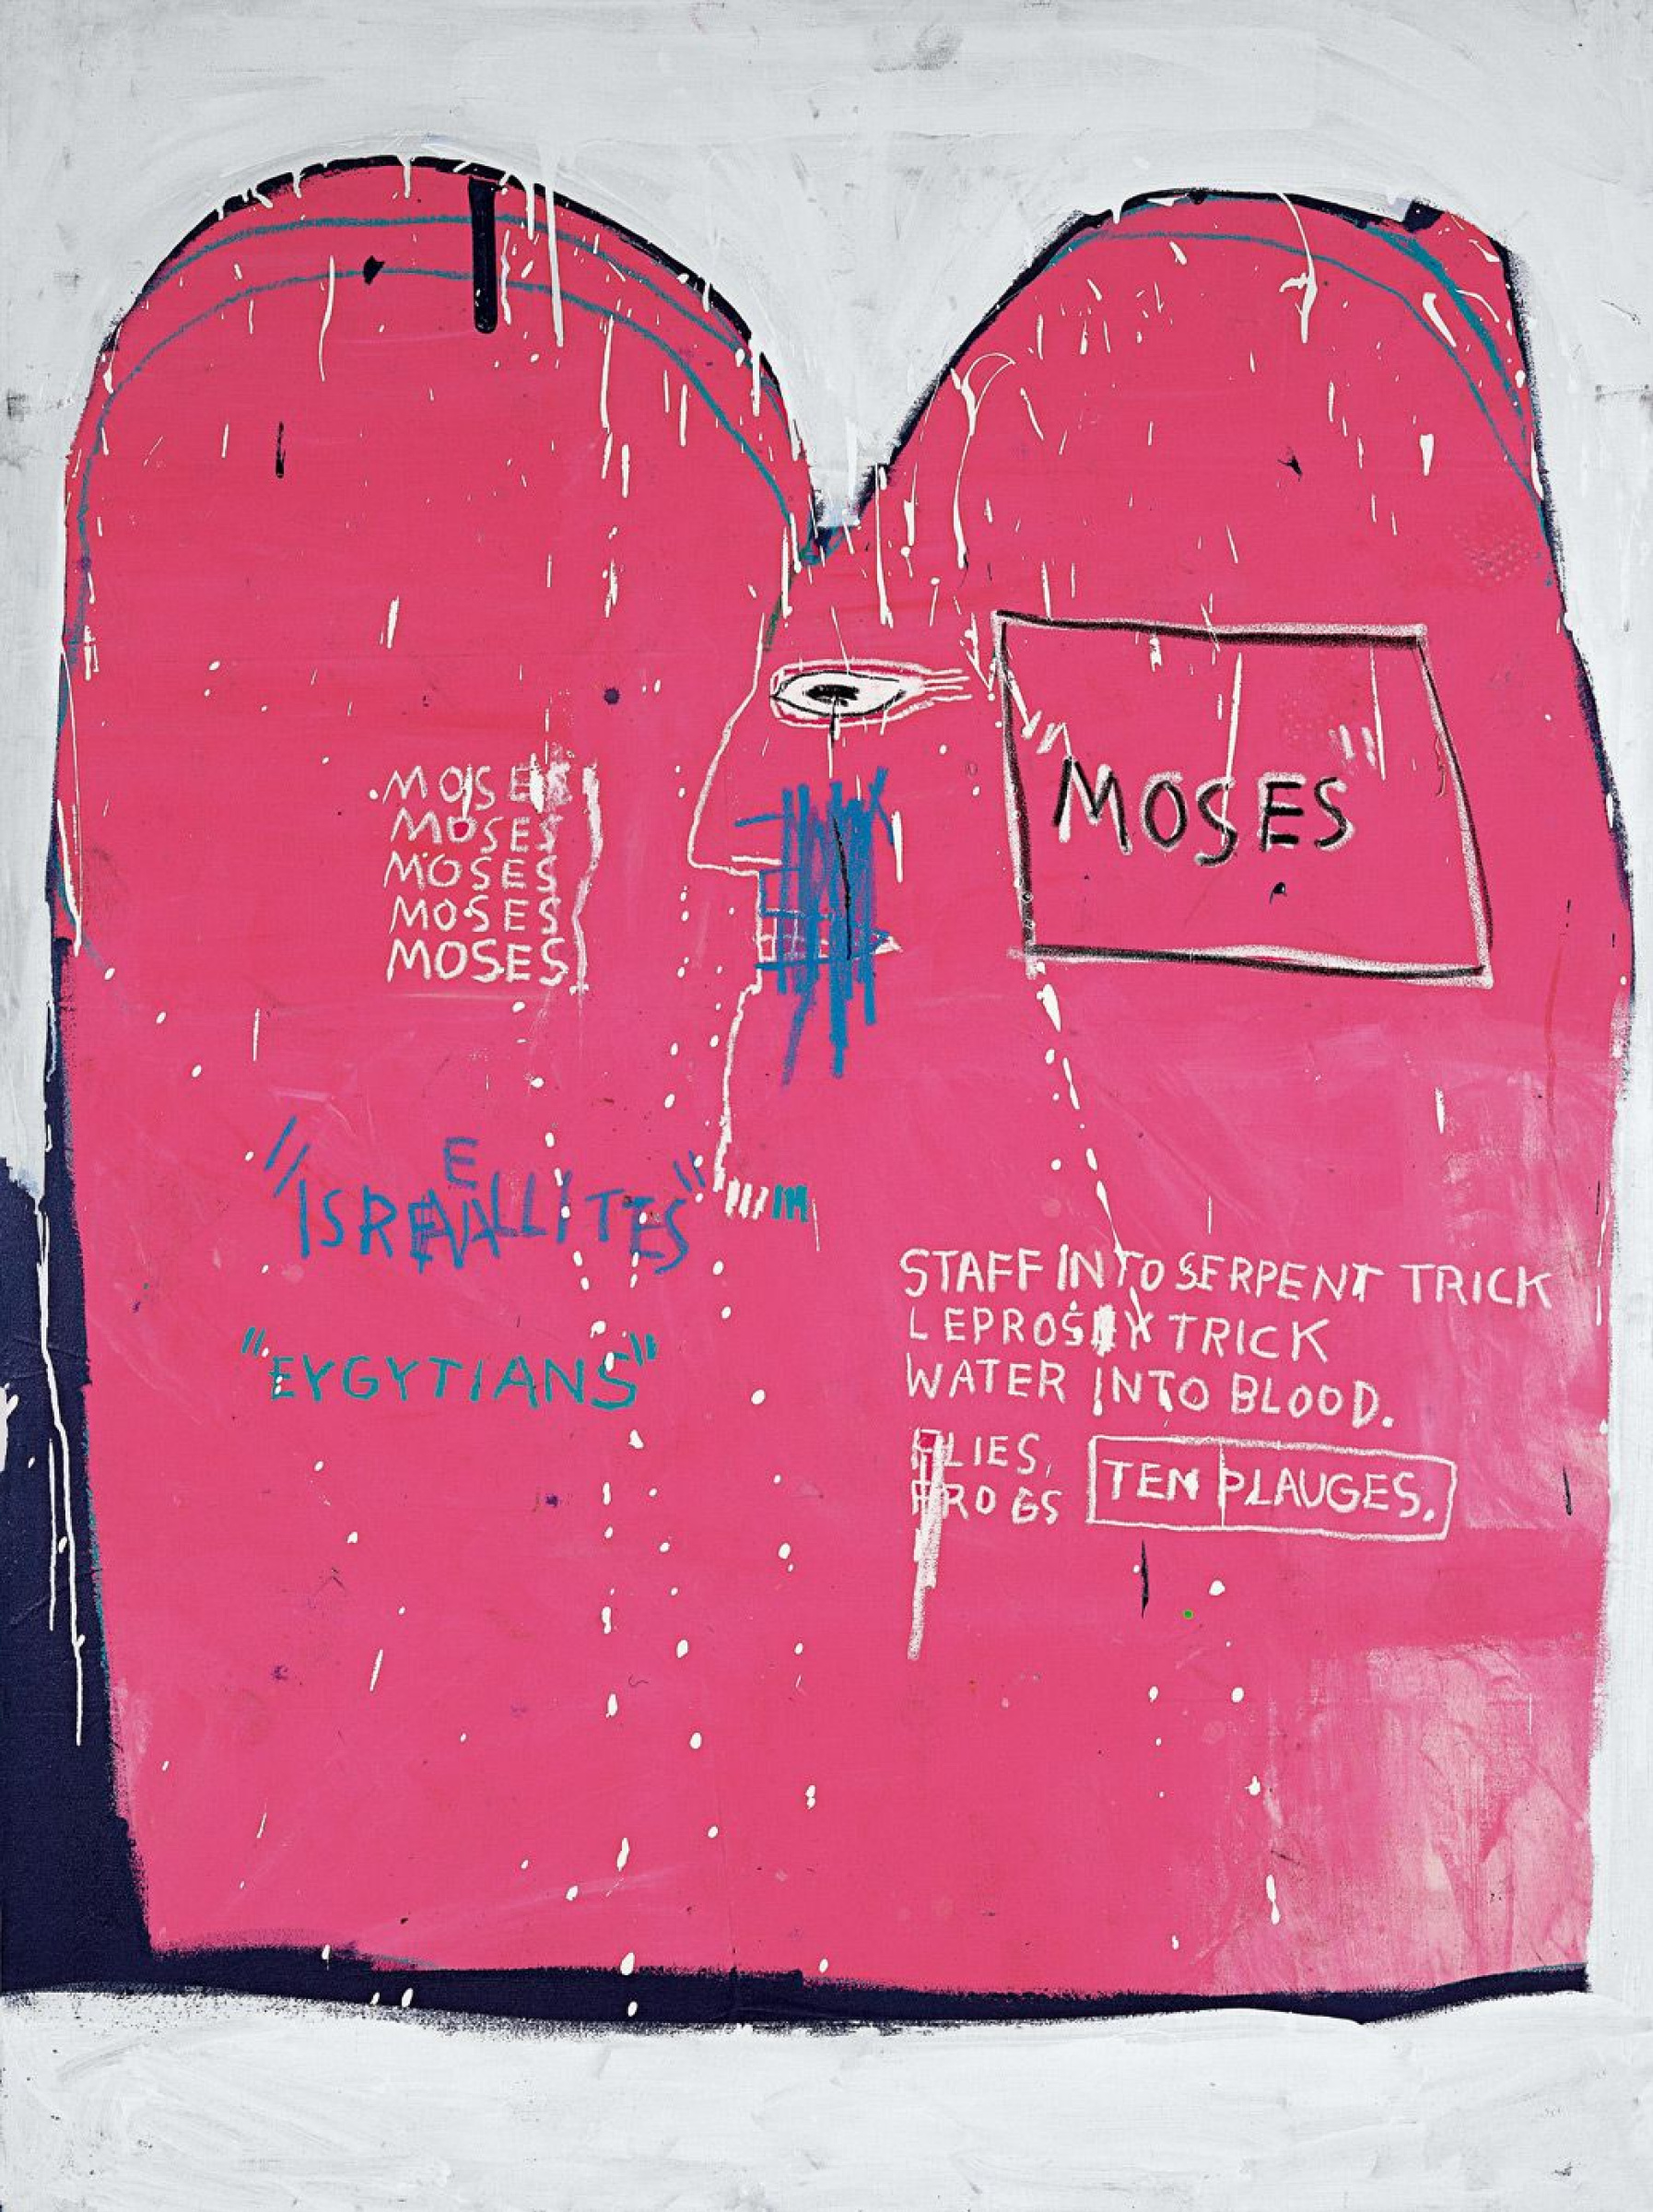 Moses and the Egyptians (Моисей и египтяне), 1982. Жан-Мишель Баския (Jean-Michel Basquiat) - американский художник. Неоэкспрессионизм